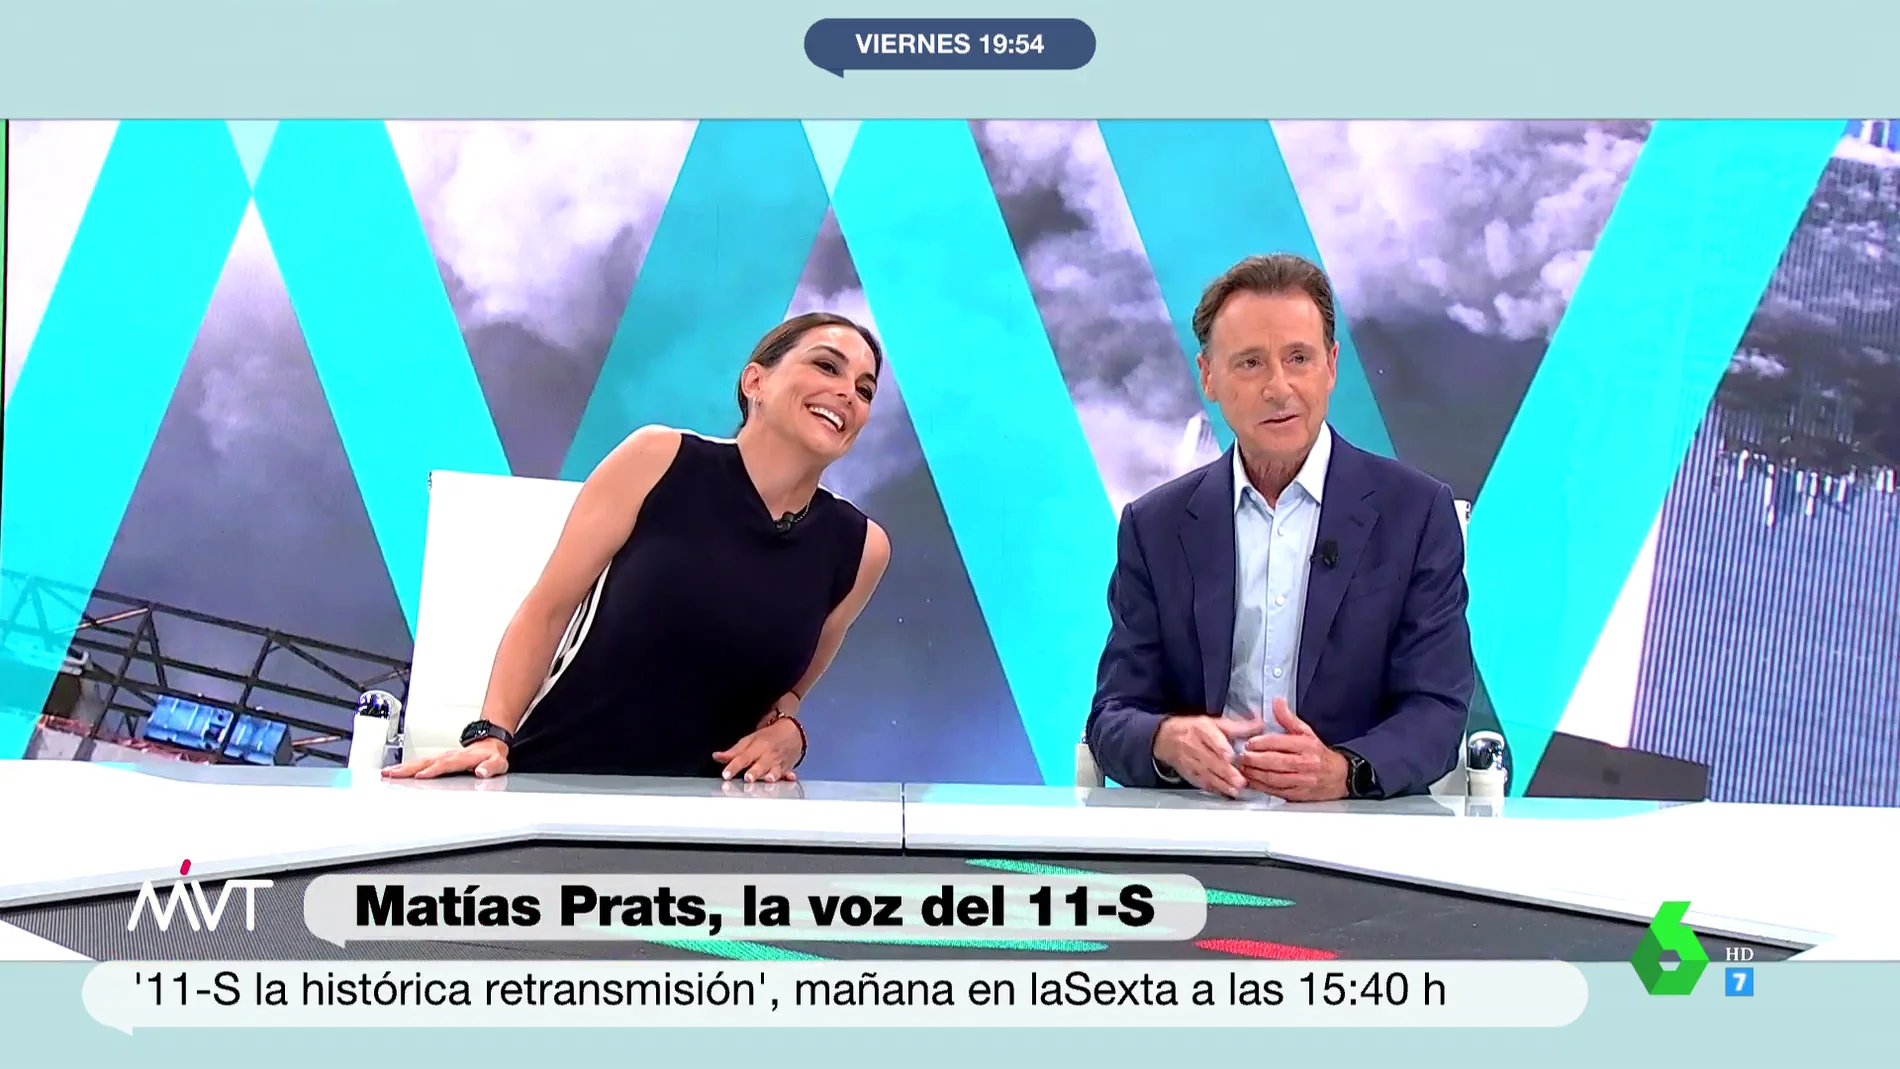 El emotivo elogio de Mónica Carrillo a Matías Prats: "Estamos ante el mejor narrador de noticias de nuestro país"